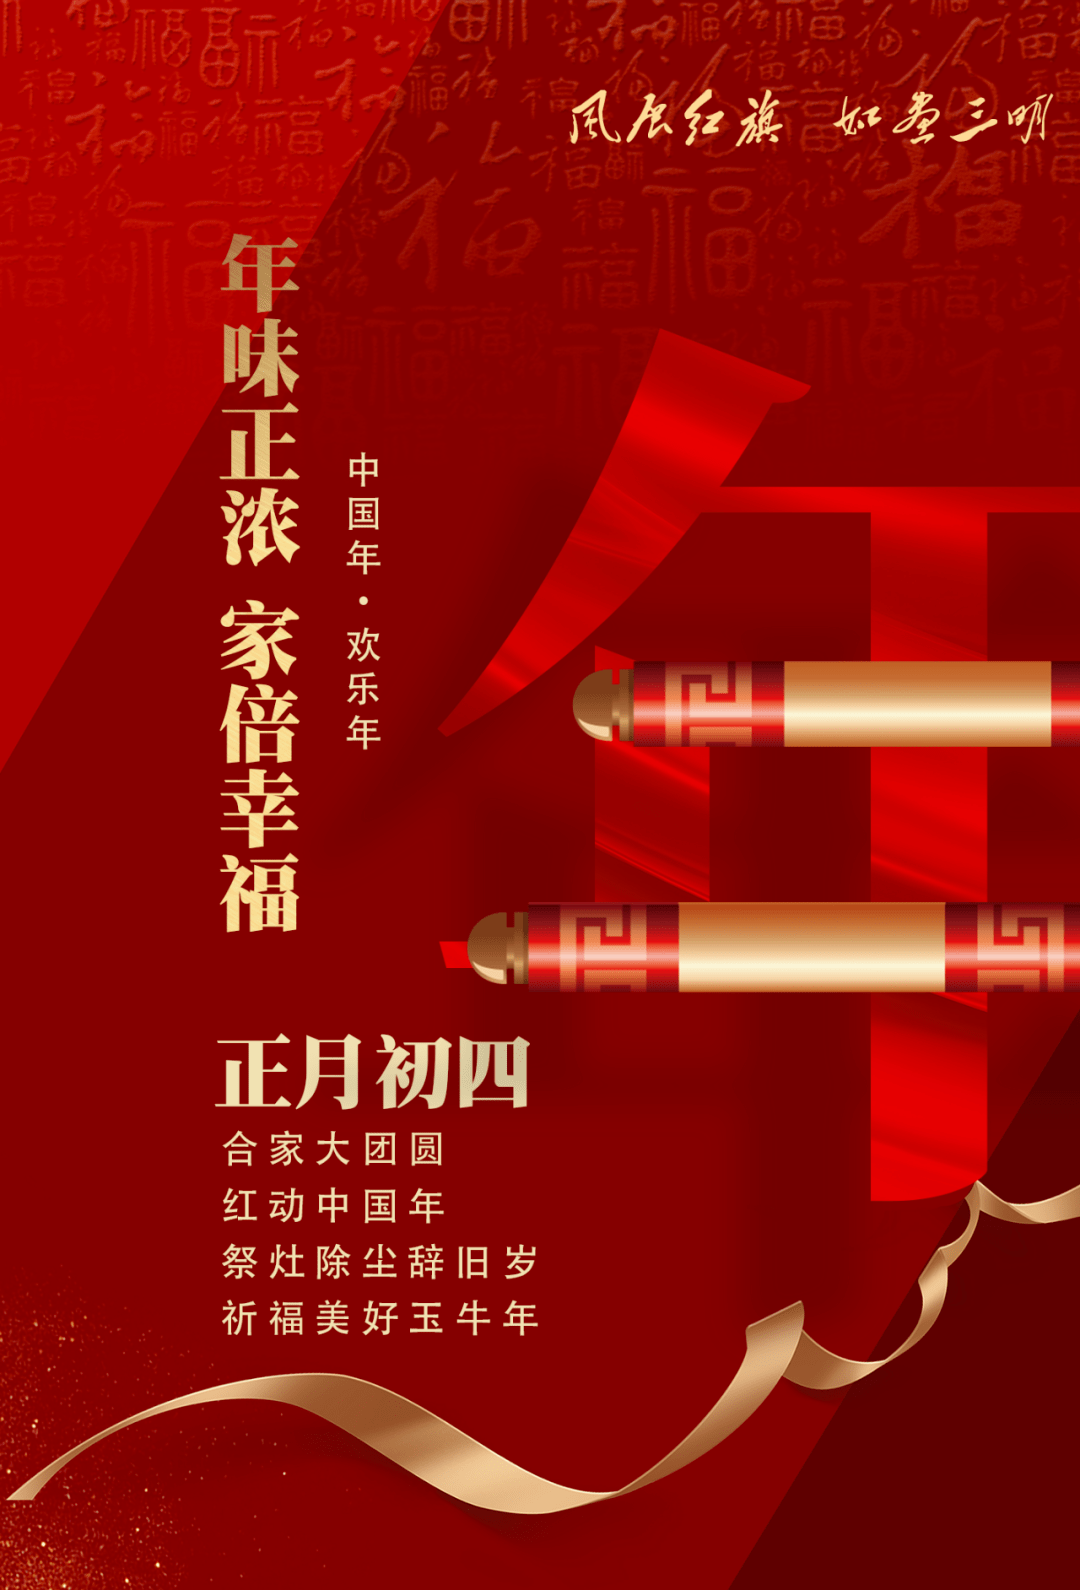 春节海报⑦ | 正月初四,春节愉快合家欢,幸福美满万年长!